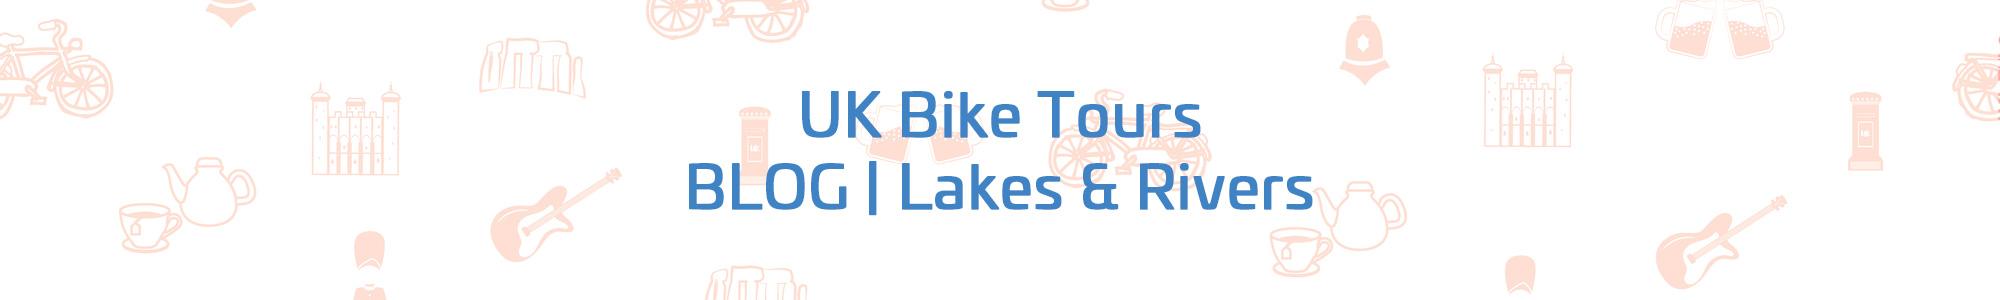 UK Bike Tours Blog | Lakes & Rivers